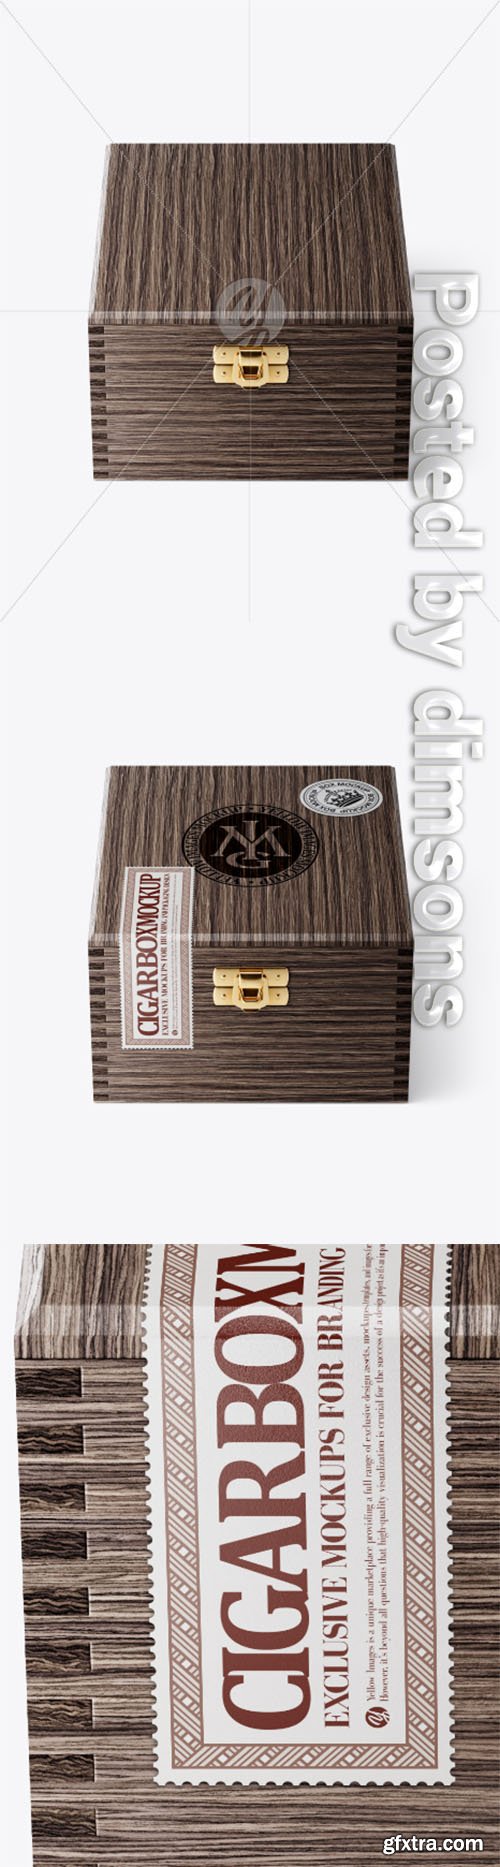 Wooden Cigar Box Mockup - Front View (High Angle Shot) 33785